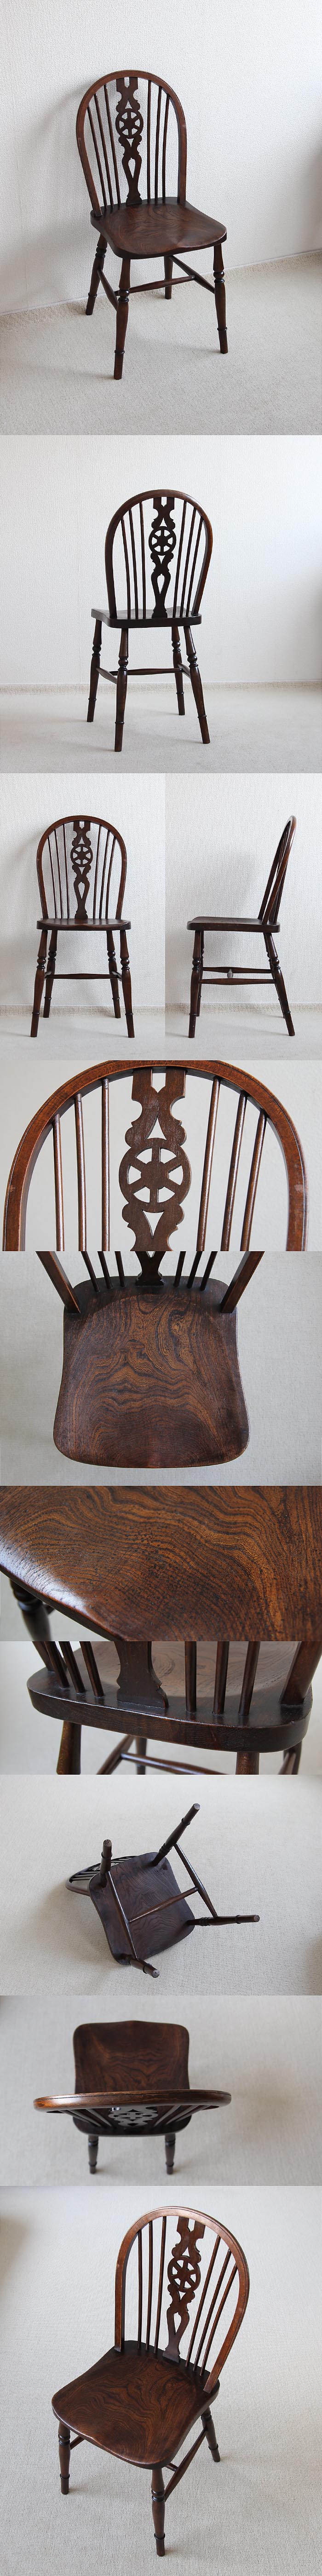 イギリス アンティーク ホイールバックチェア 木製椅子 ダイニングチェア 家具「一枚板座面」V-950